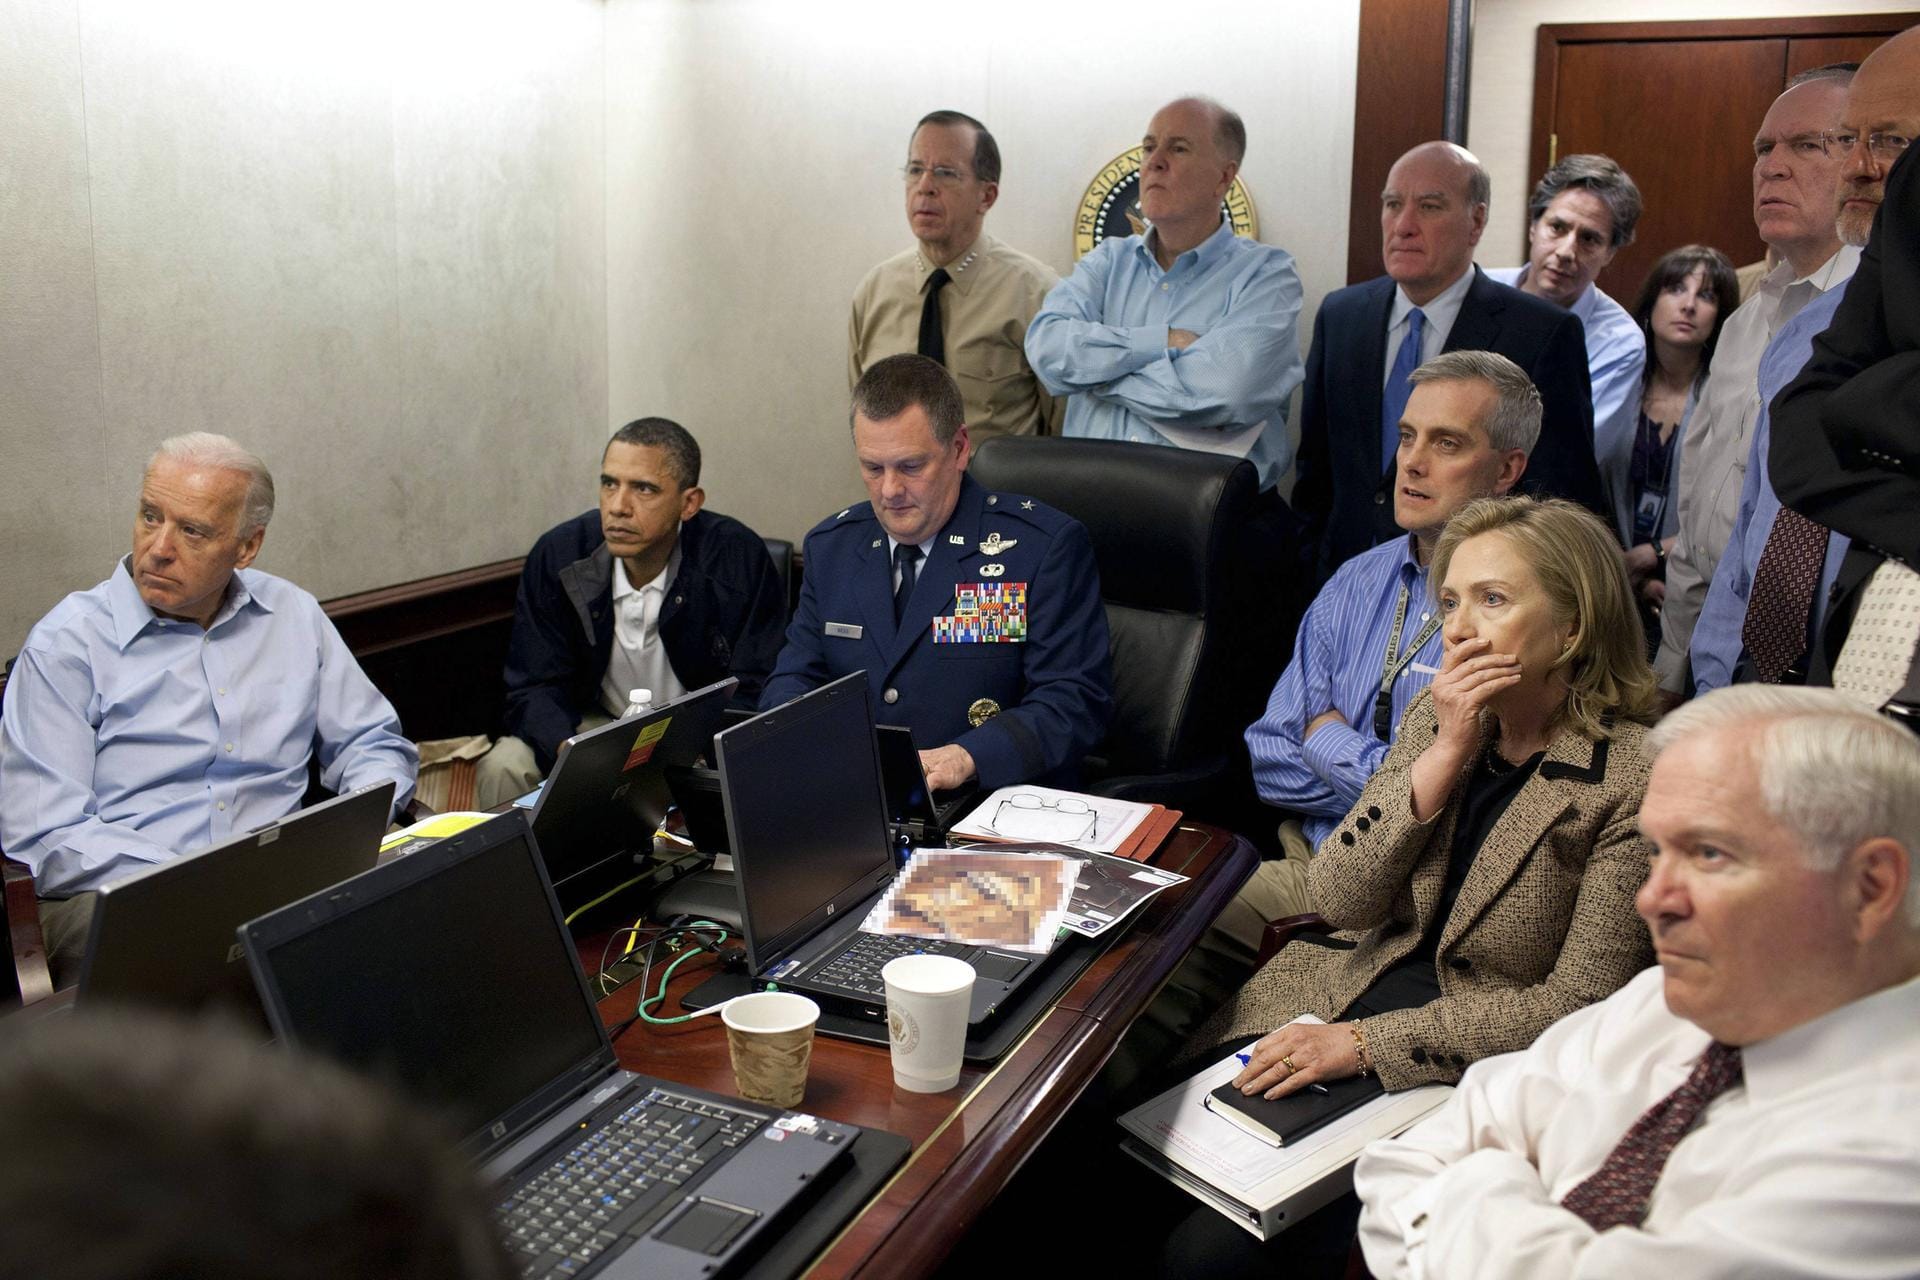 Der "Situation Room" im Jahr 2011: Die Situation erinnert an die bekannte Aufnahme des ehemaligen US-Präsidenten Obama bei der Tötung Osama bin Ladens.